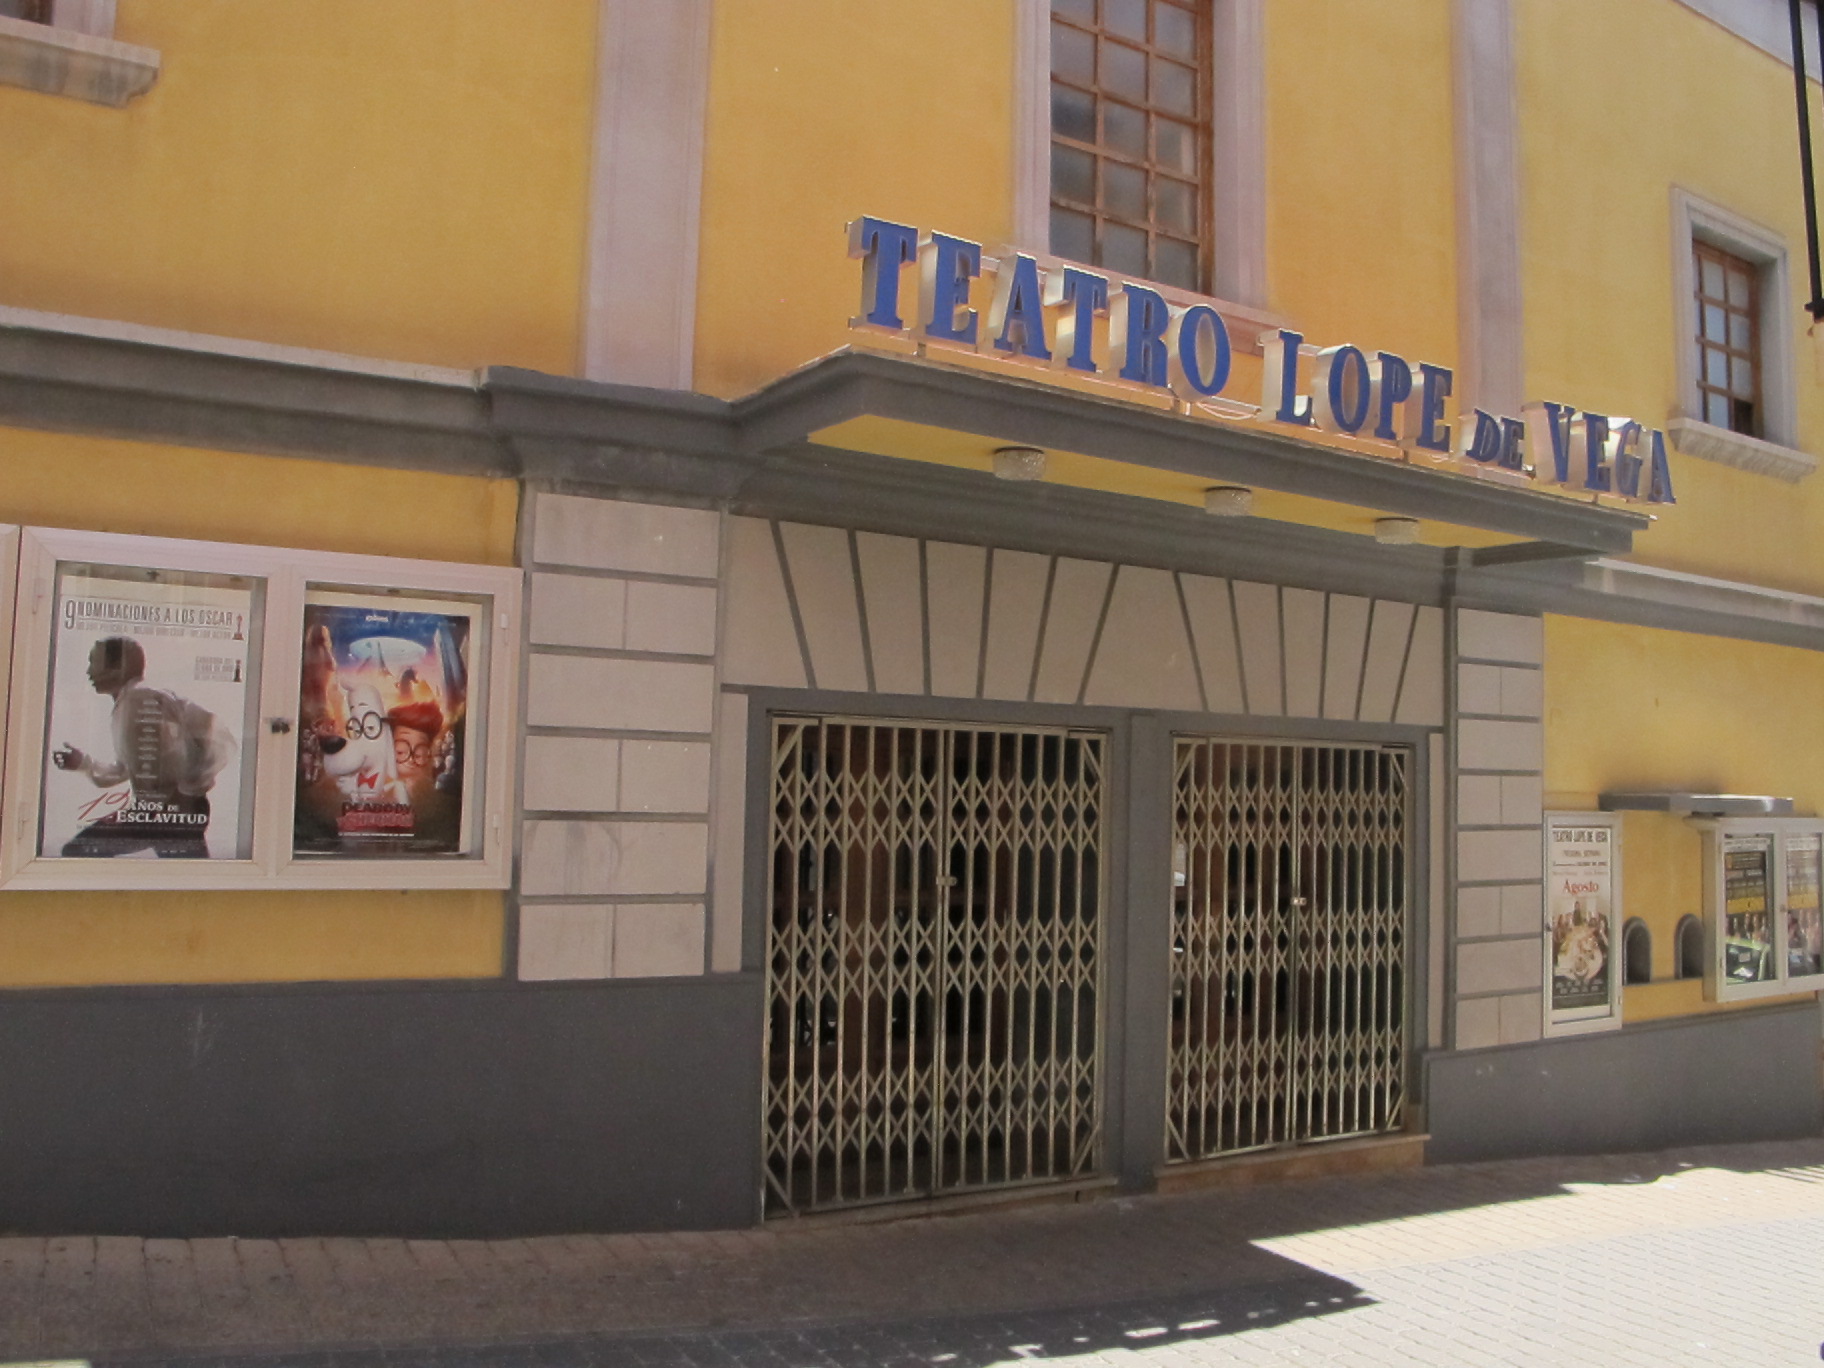 Lope de Vega Theater